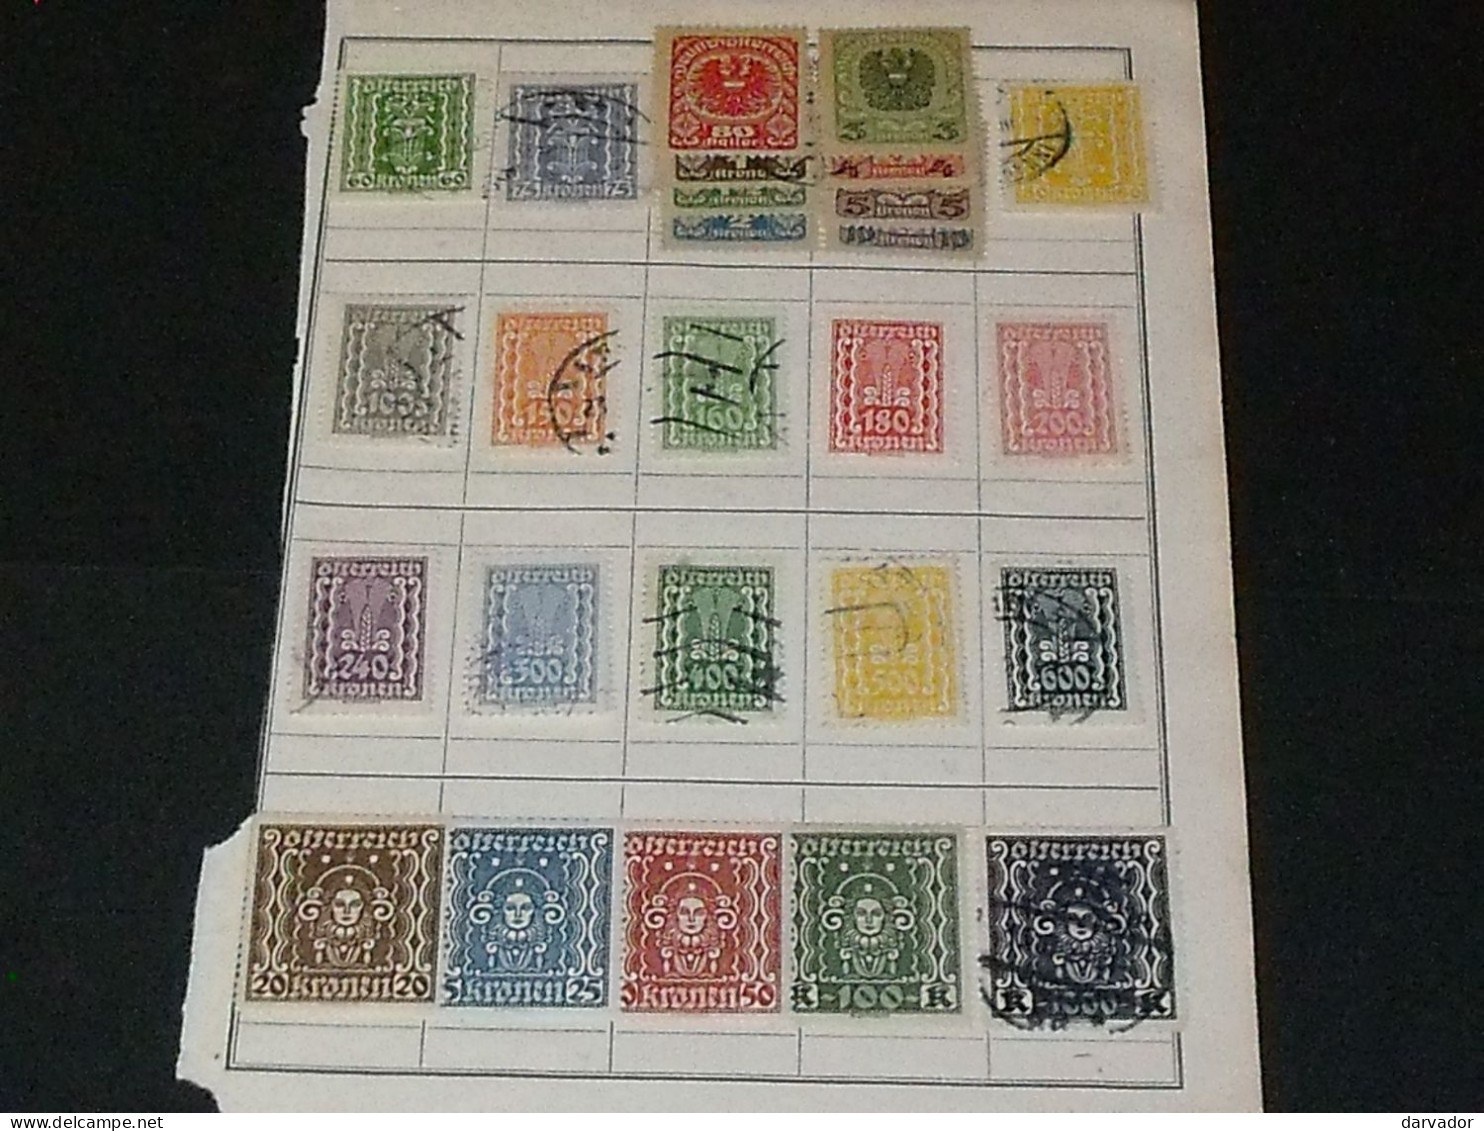 CAISSE BLEU / AUTRICHE  : divers timbres oblitérés tous états